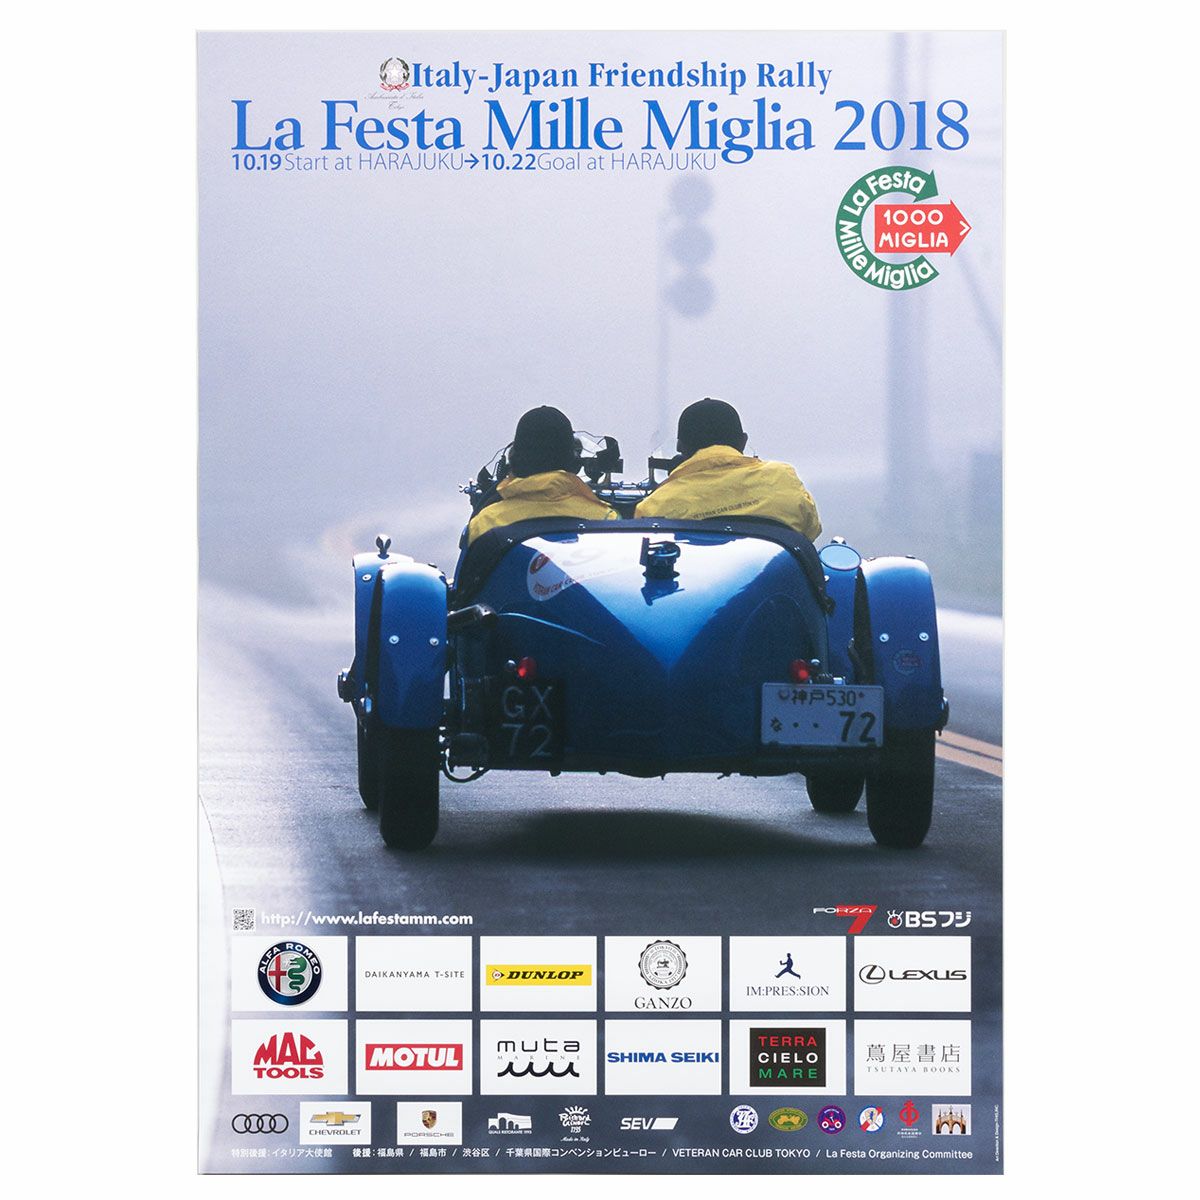 ラフェスタ ミッレミリア 2018 オフィシャルポスター 中 | Motorimoda公式オンラインショップ